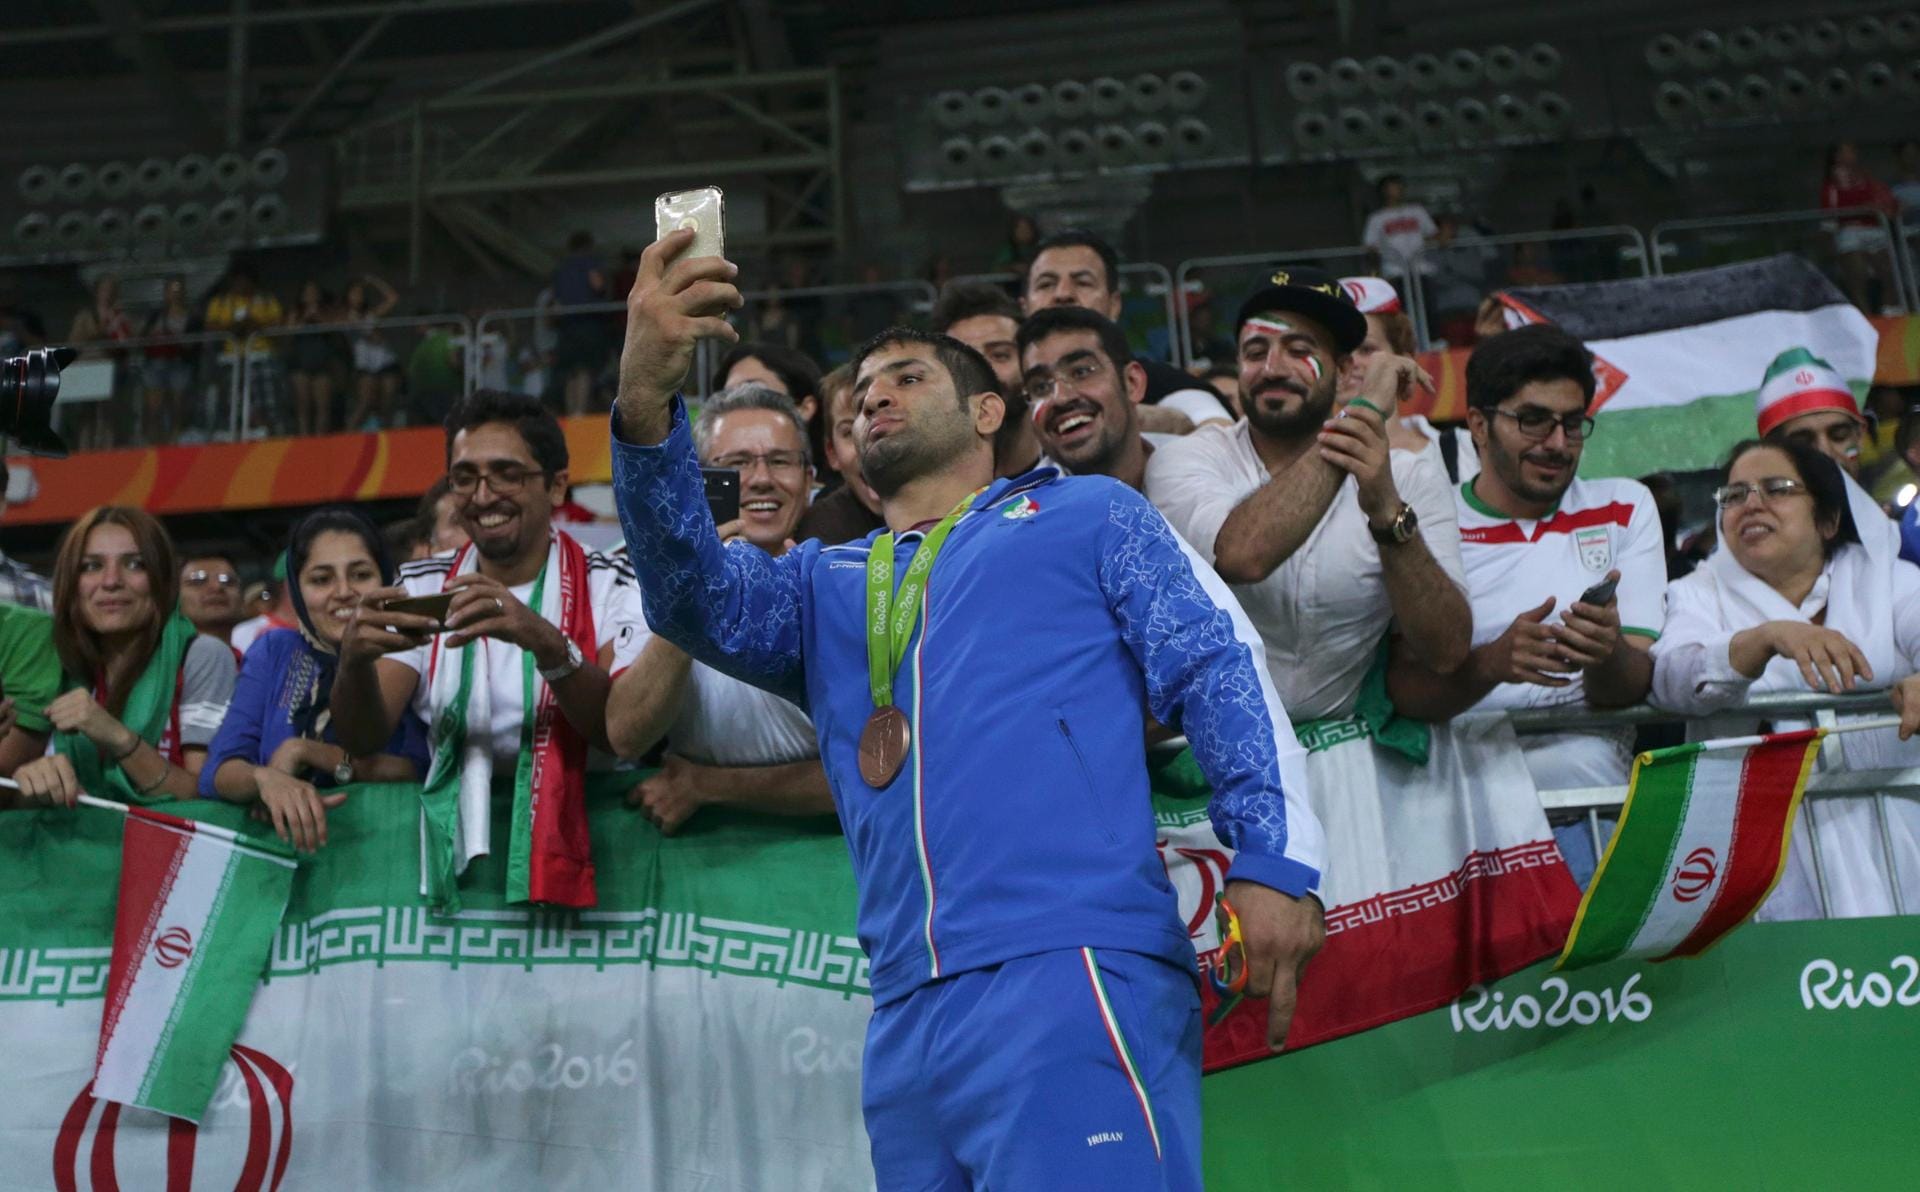 Selfie mit den Fans: Bronze-Gewinner Saeid Mourad Abdvali aus dem Iran nahm sich nach seinem Triumph im Ringen Zeit für die mitgereisten Anhänger.